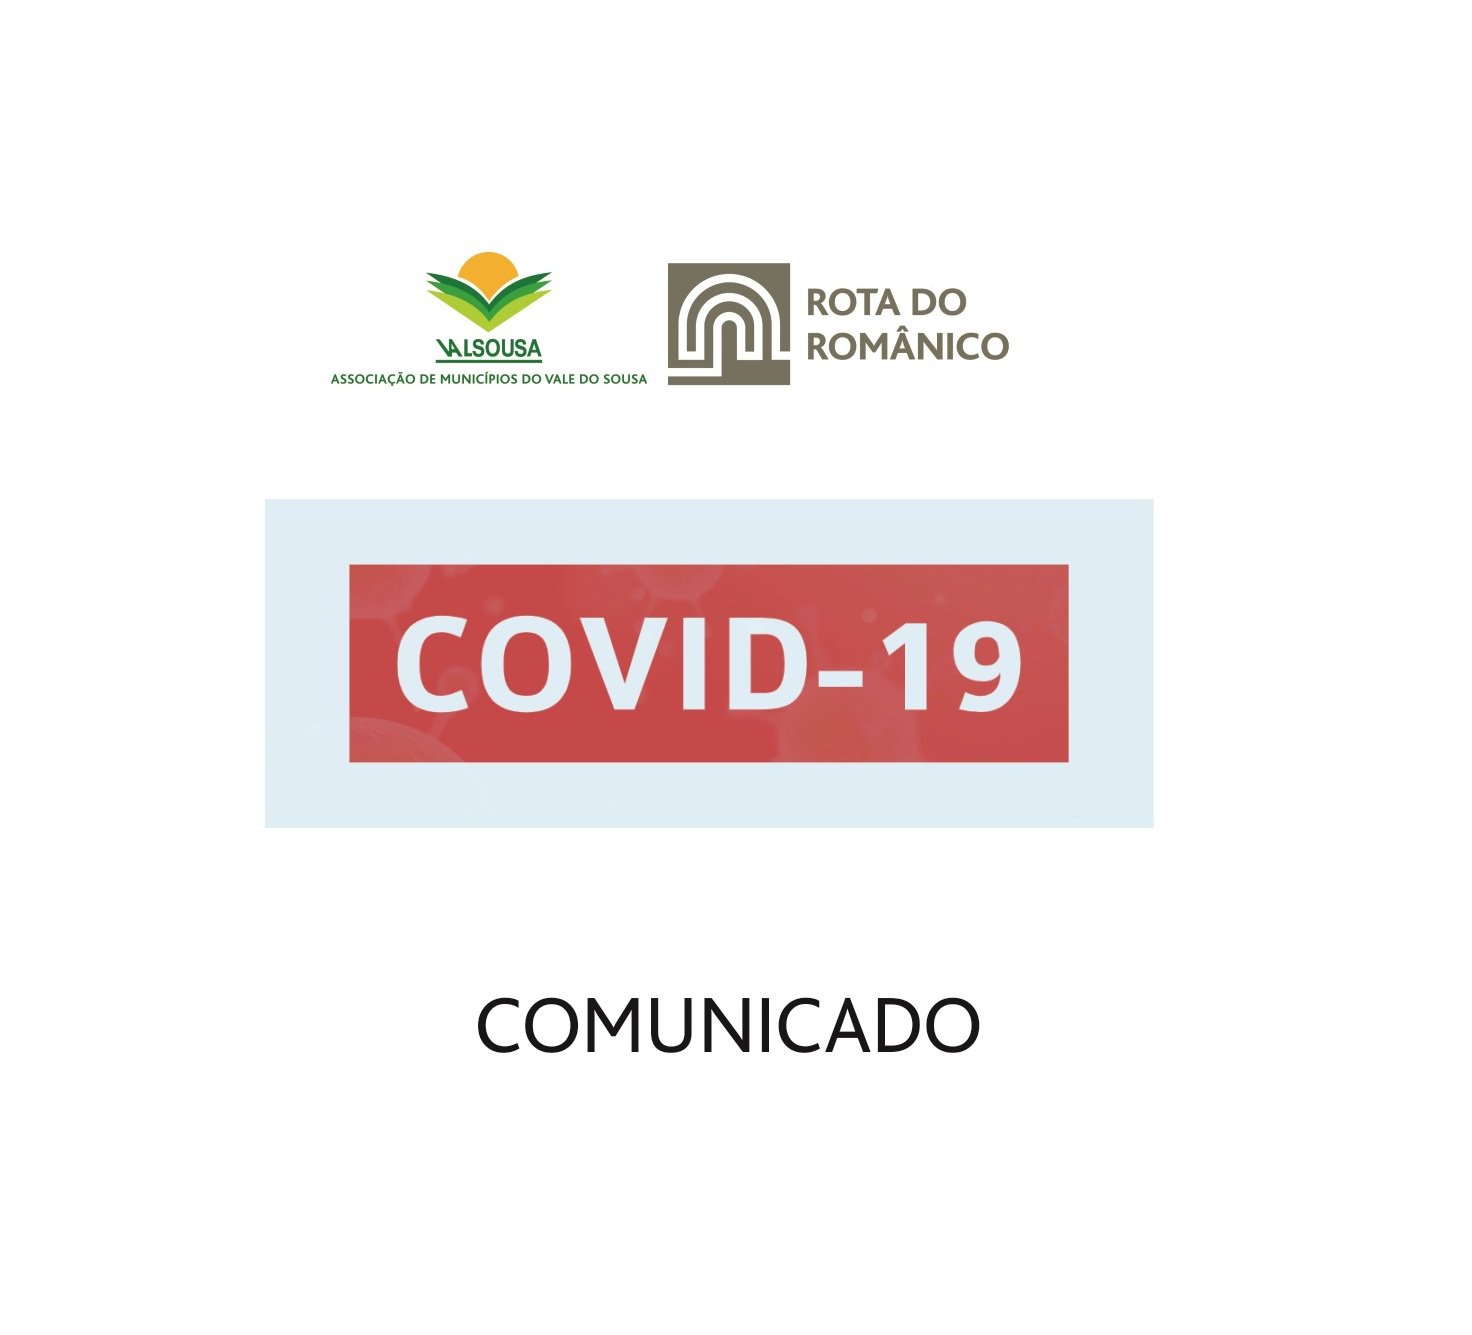 COVID-19: Preventive Measures